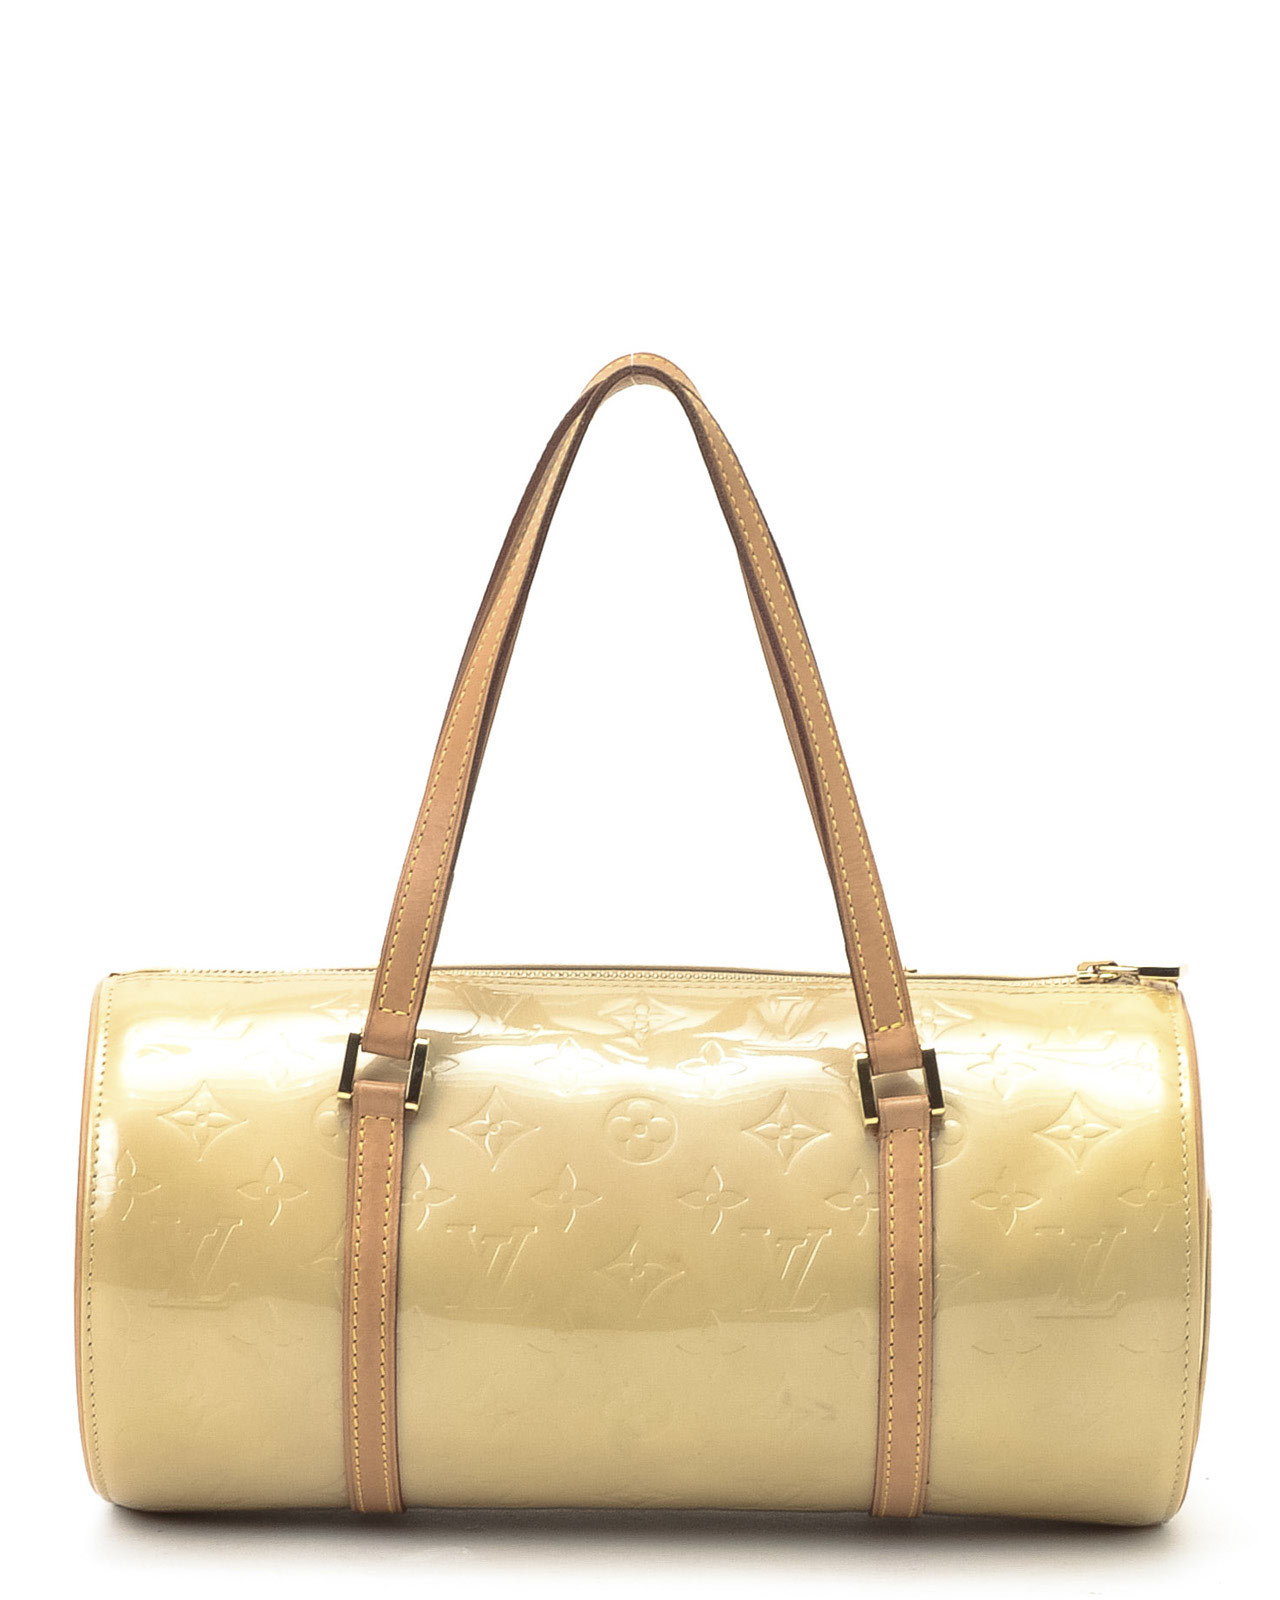 Lyst - Louis Vuitton Barrel Handbag in Metallic